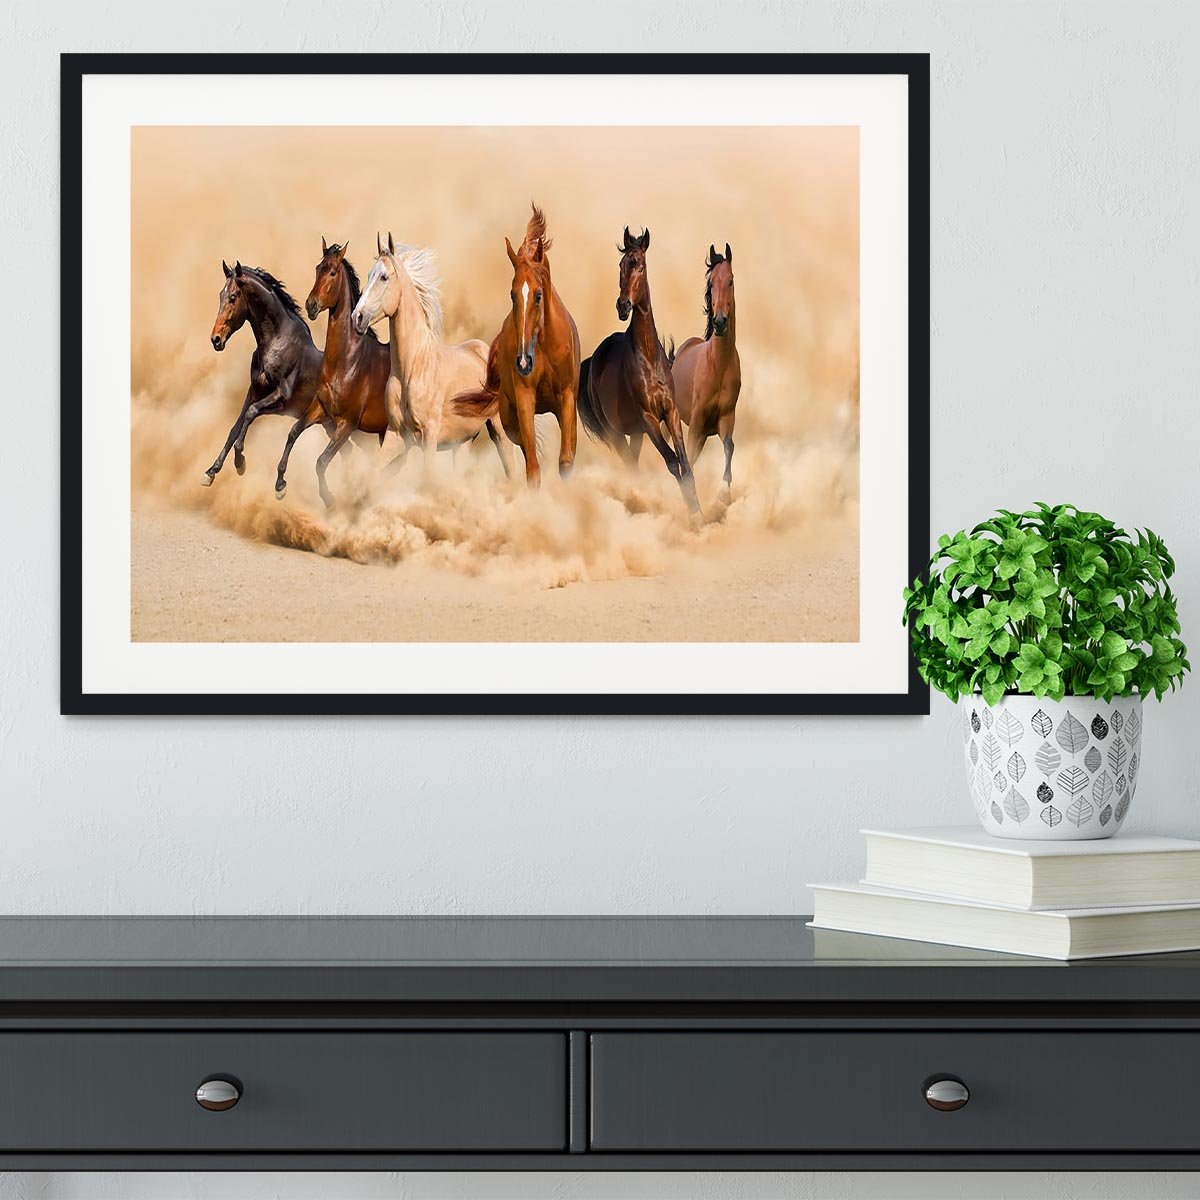 Horse herd run in desert sand storm Framed Print - Canvas Art Rocks - 1